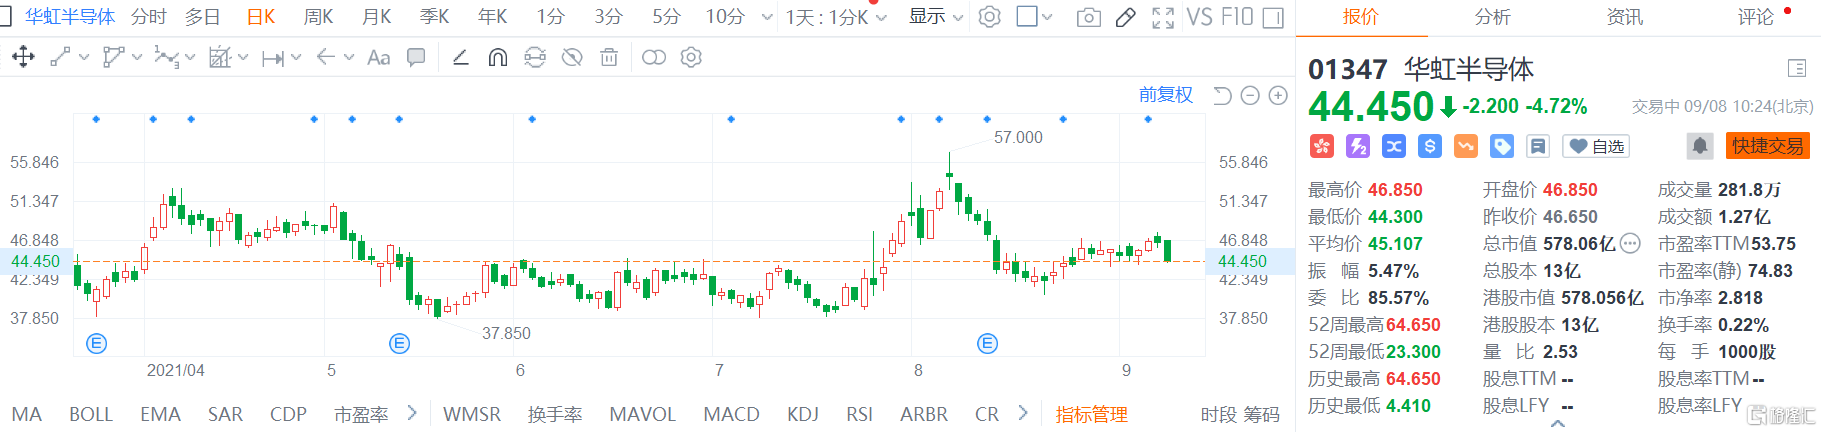 华虹半导体(1347.HK)跌4.7% 最新总市值578.1亿港元